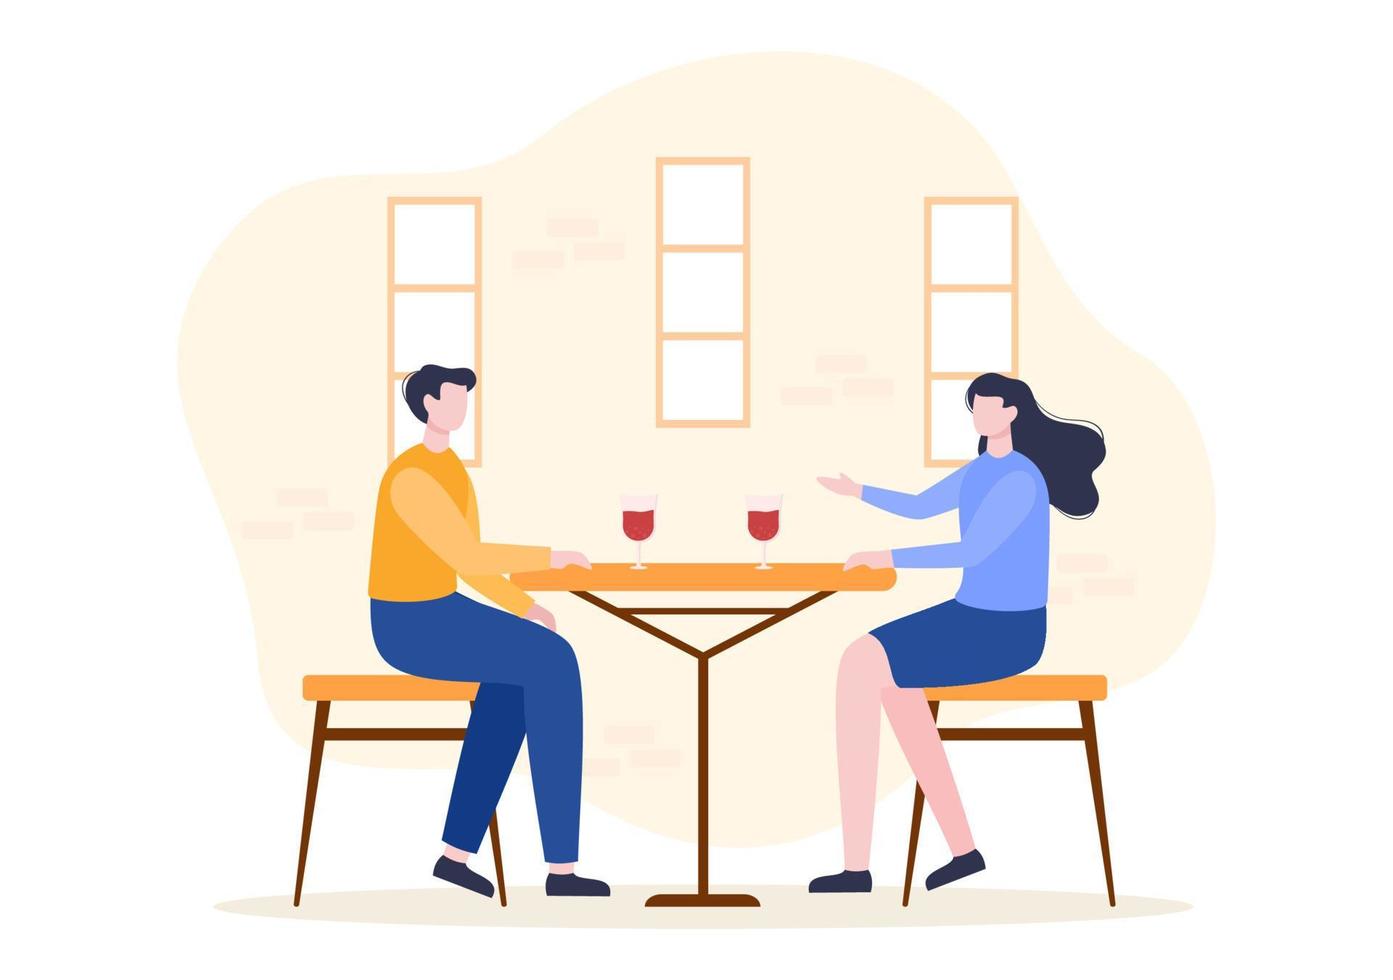 mensen die eten, praten, drinken en werken aan tafels in café of restaurant in platte cartoonillustratie vector